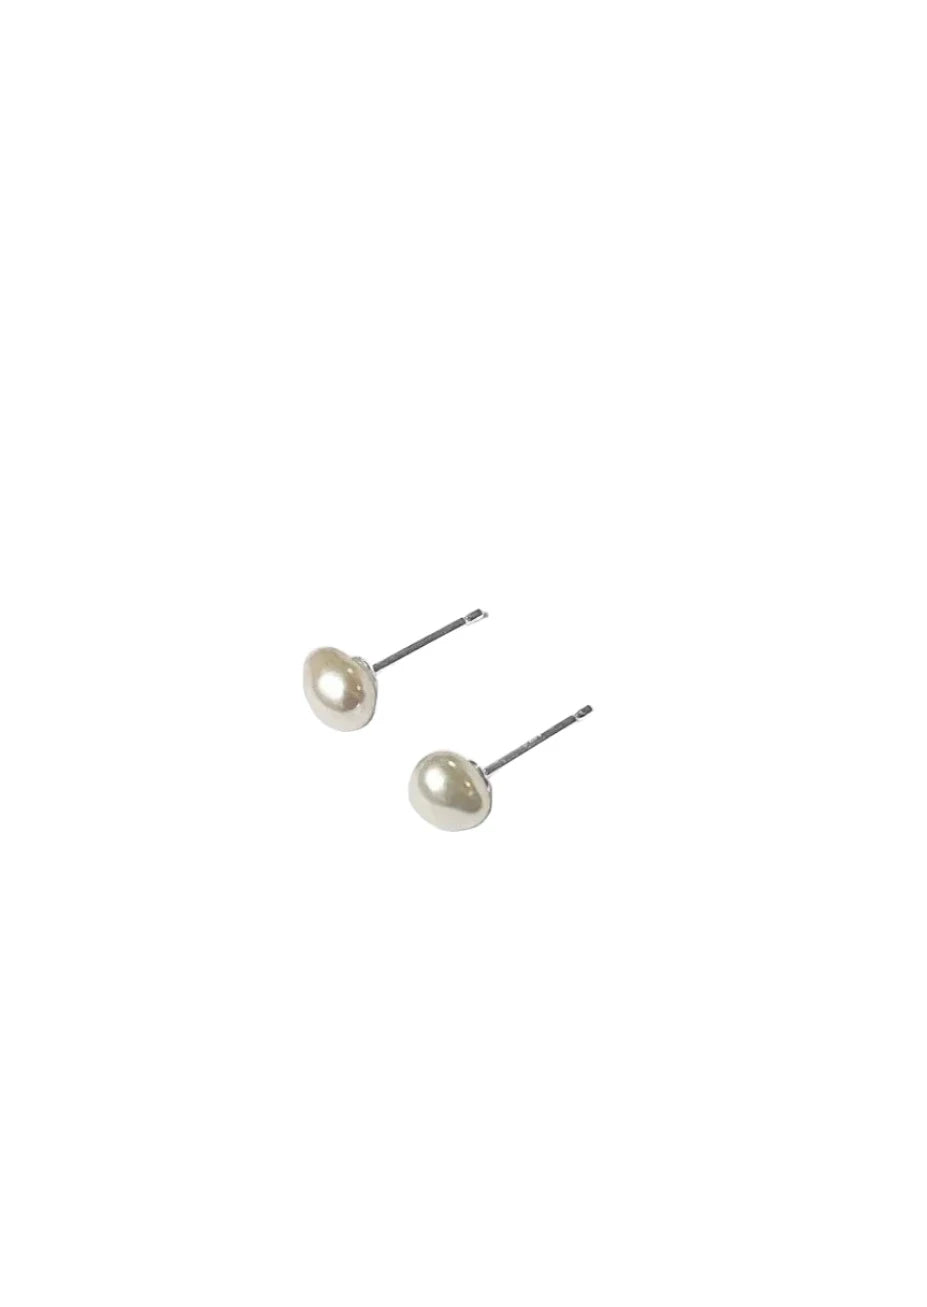 Keshi Pearl Earrings // 5mm